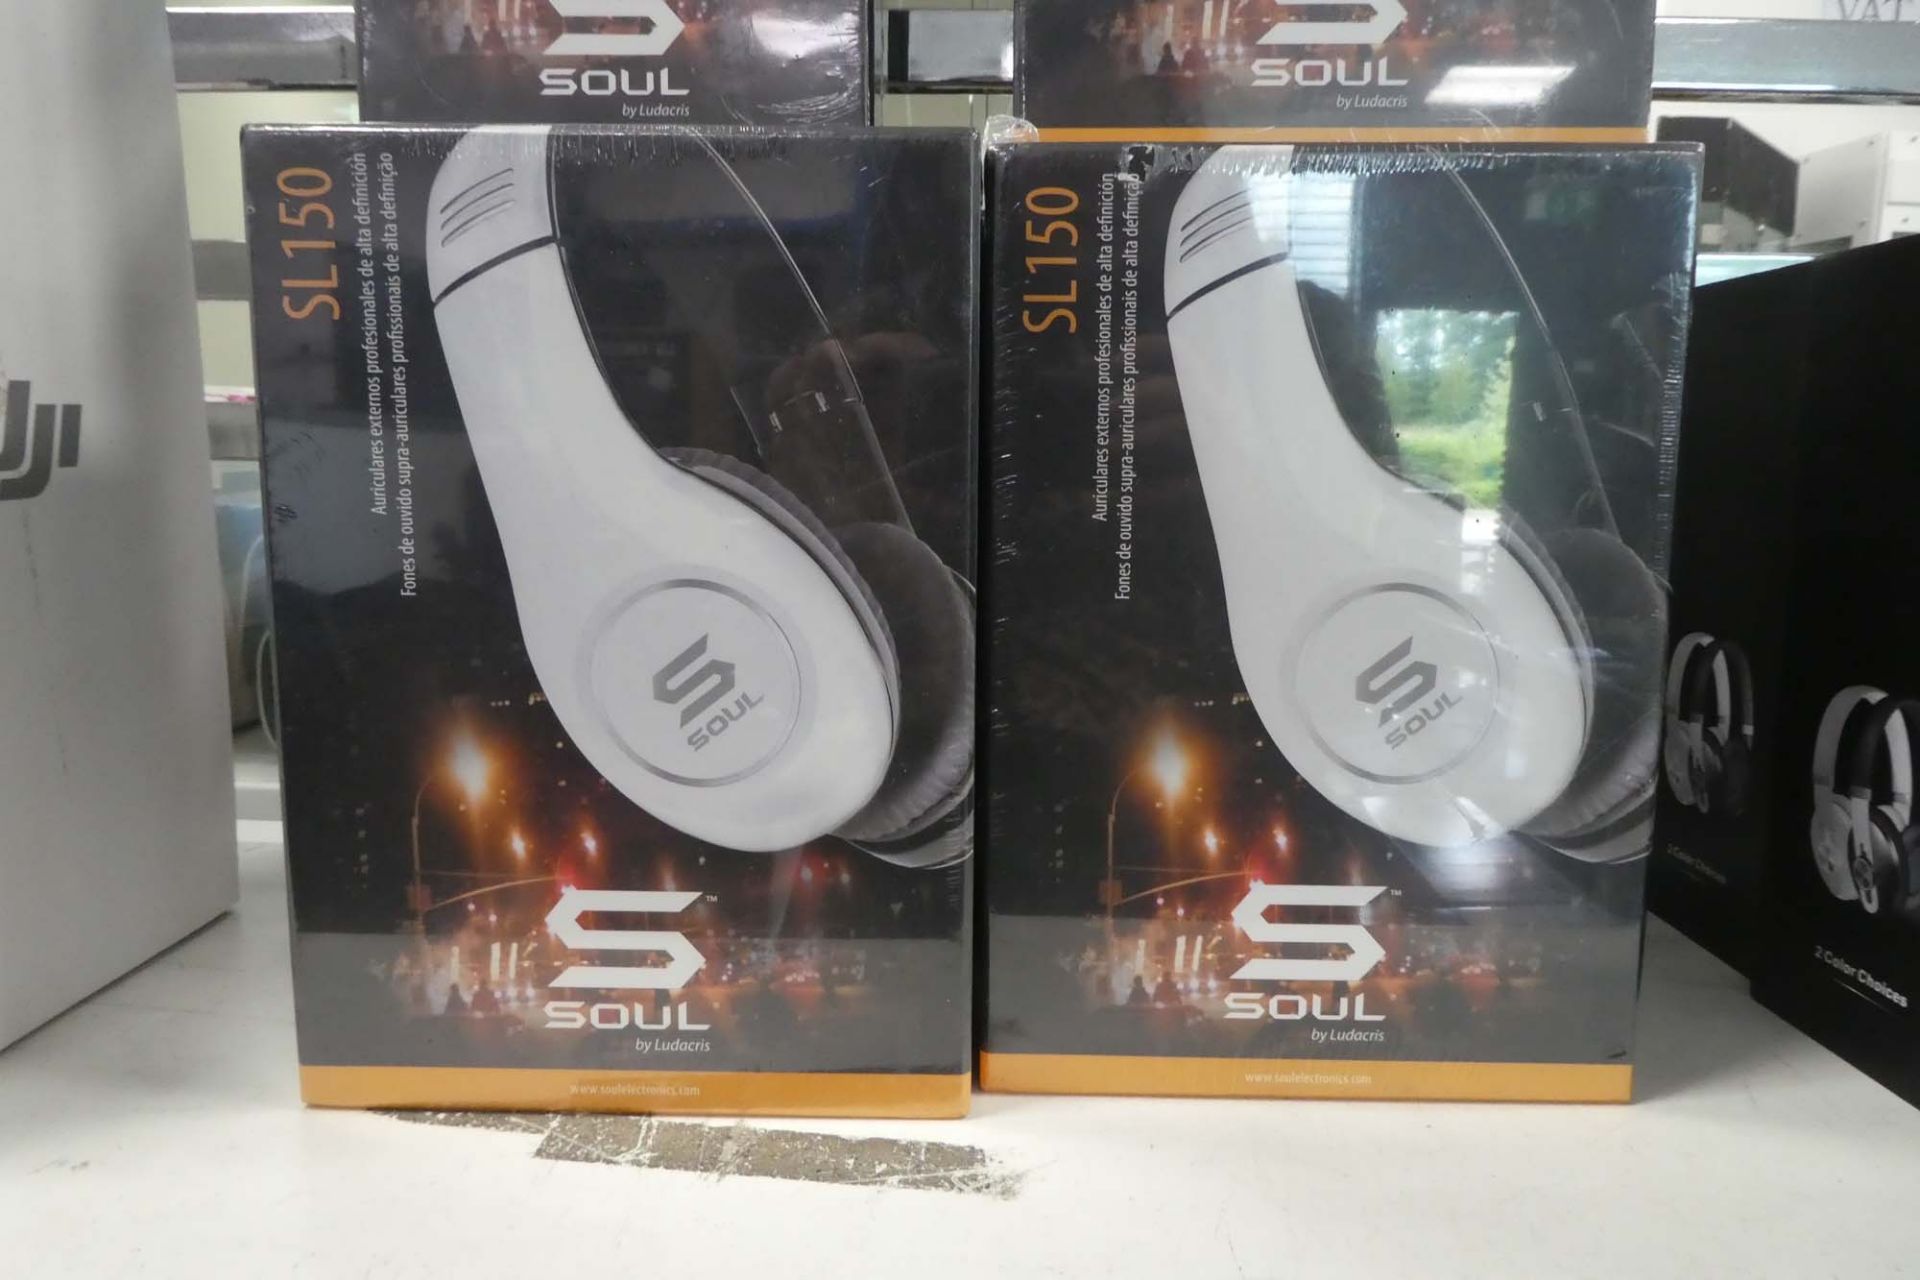 3 Soul headphone sets